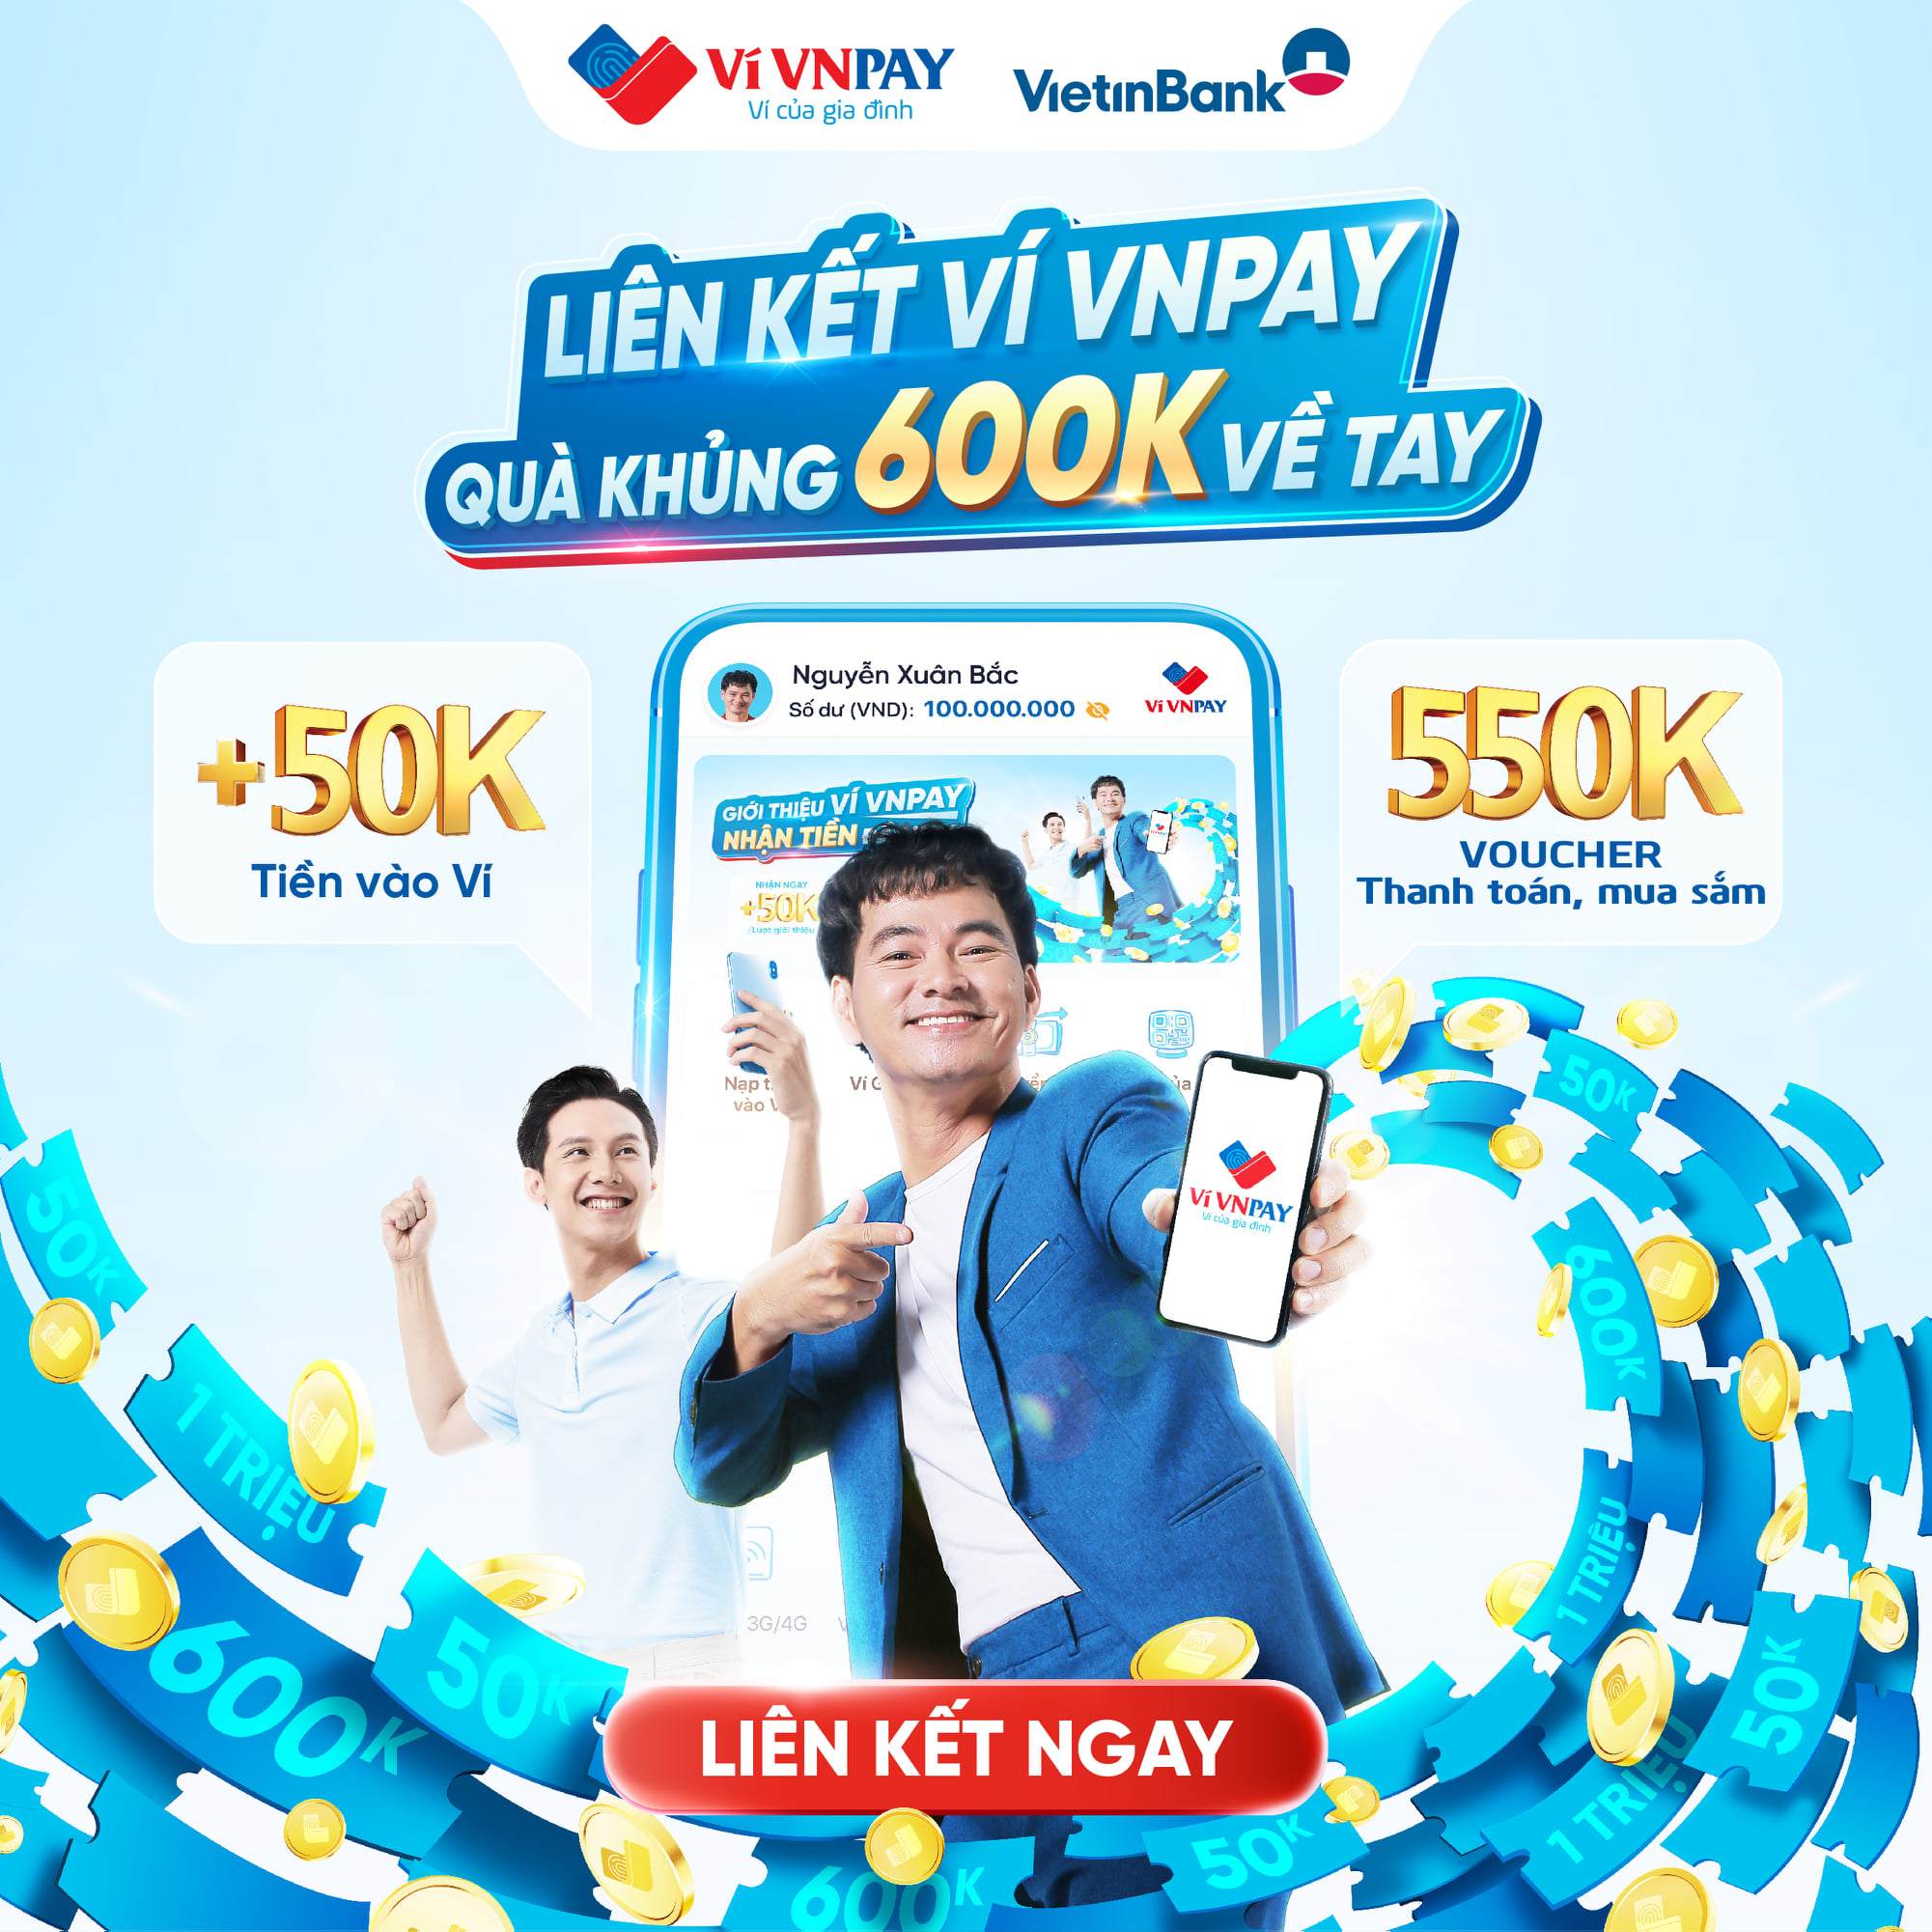 Liên kết ngân hàng VietinBank trên ví VNPAY, quà khủng 600.000 đồng về tay